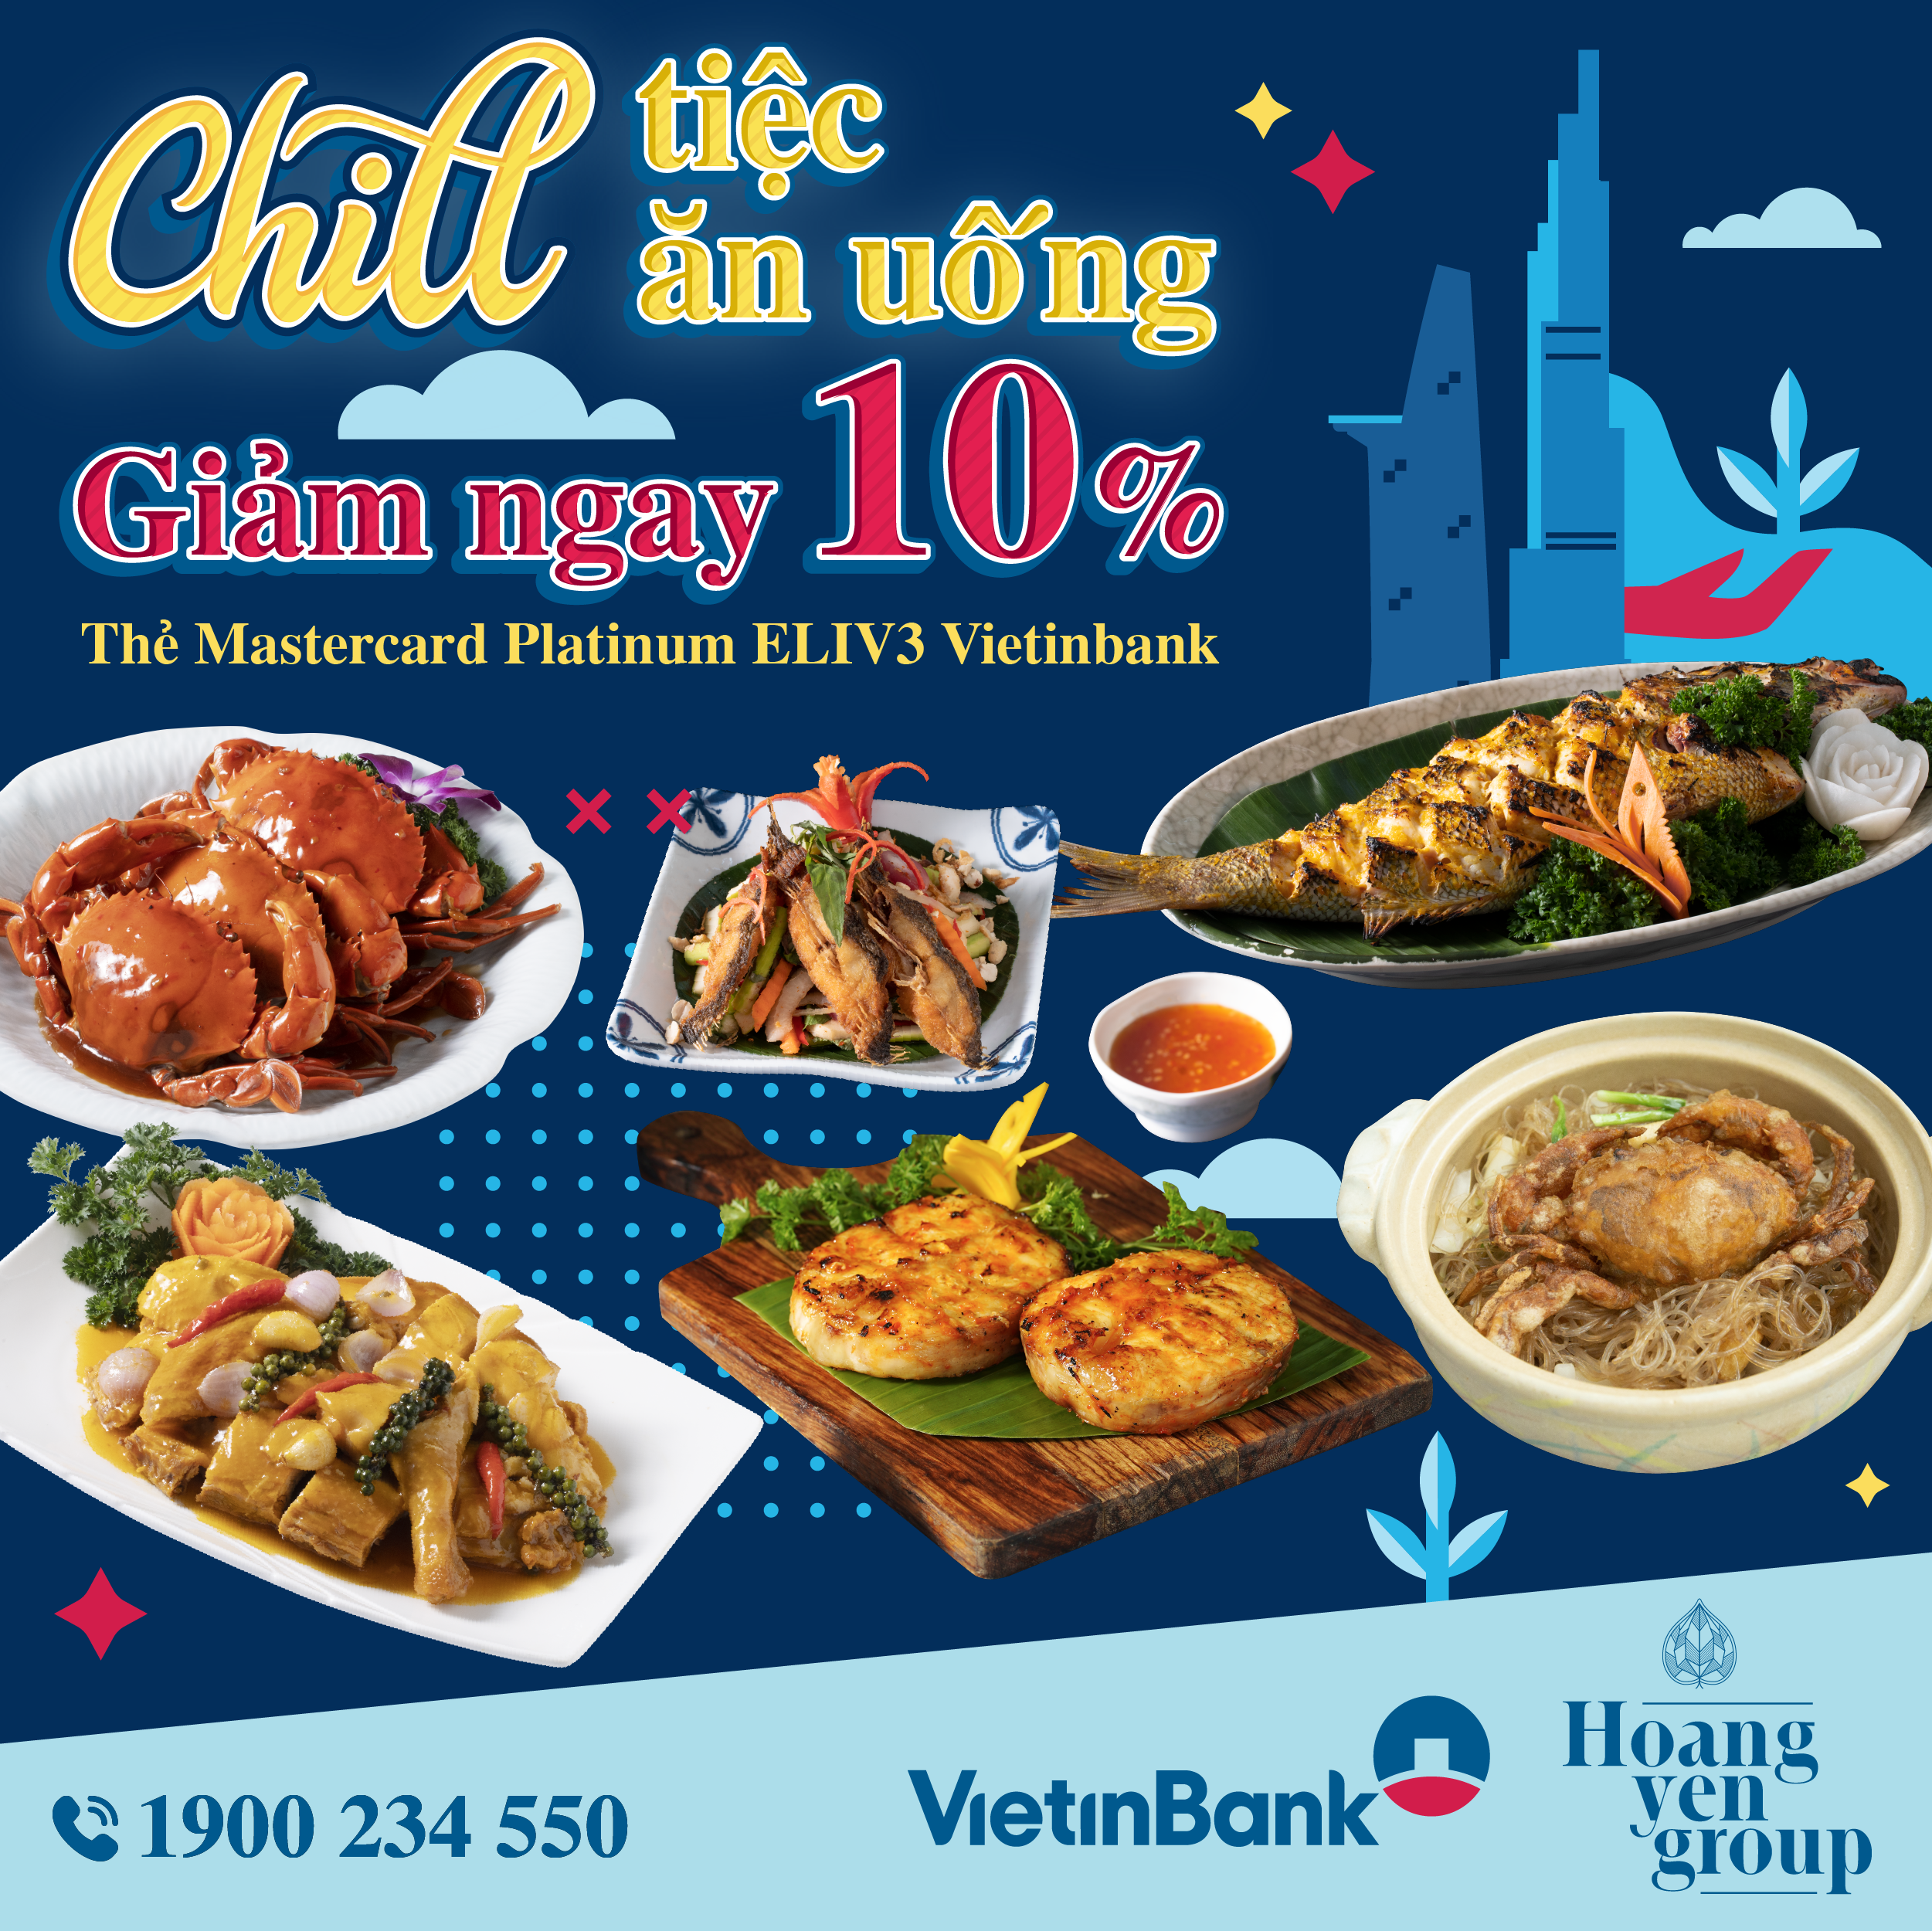 Uu dai giam 10% cho chu the VietinBank Eliv3 tai Hoang Yen Buffet Premier